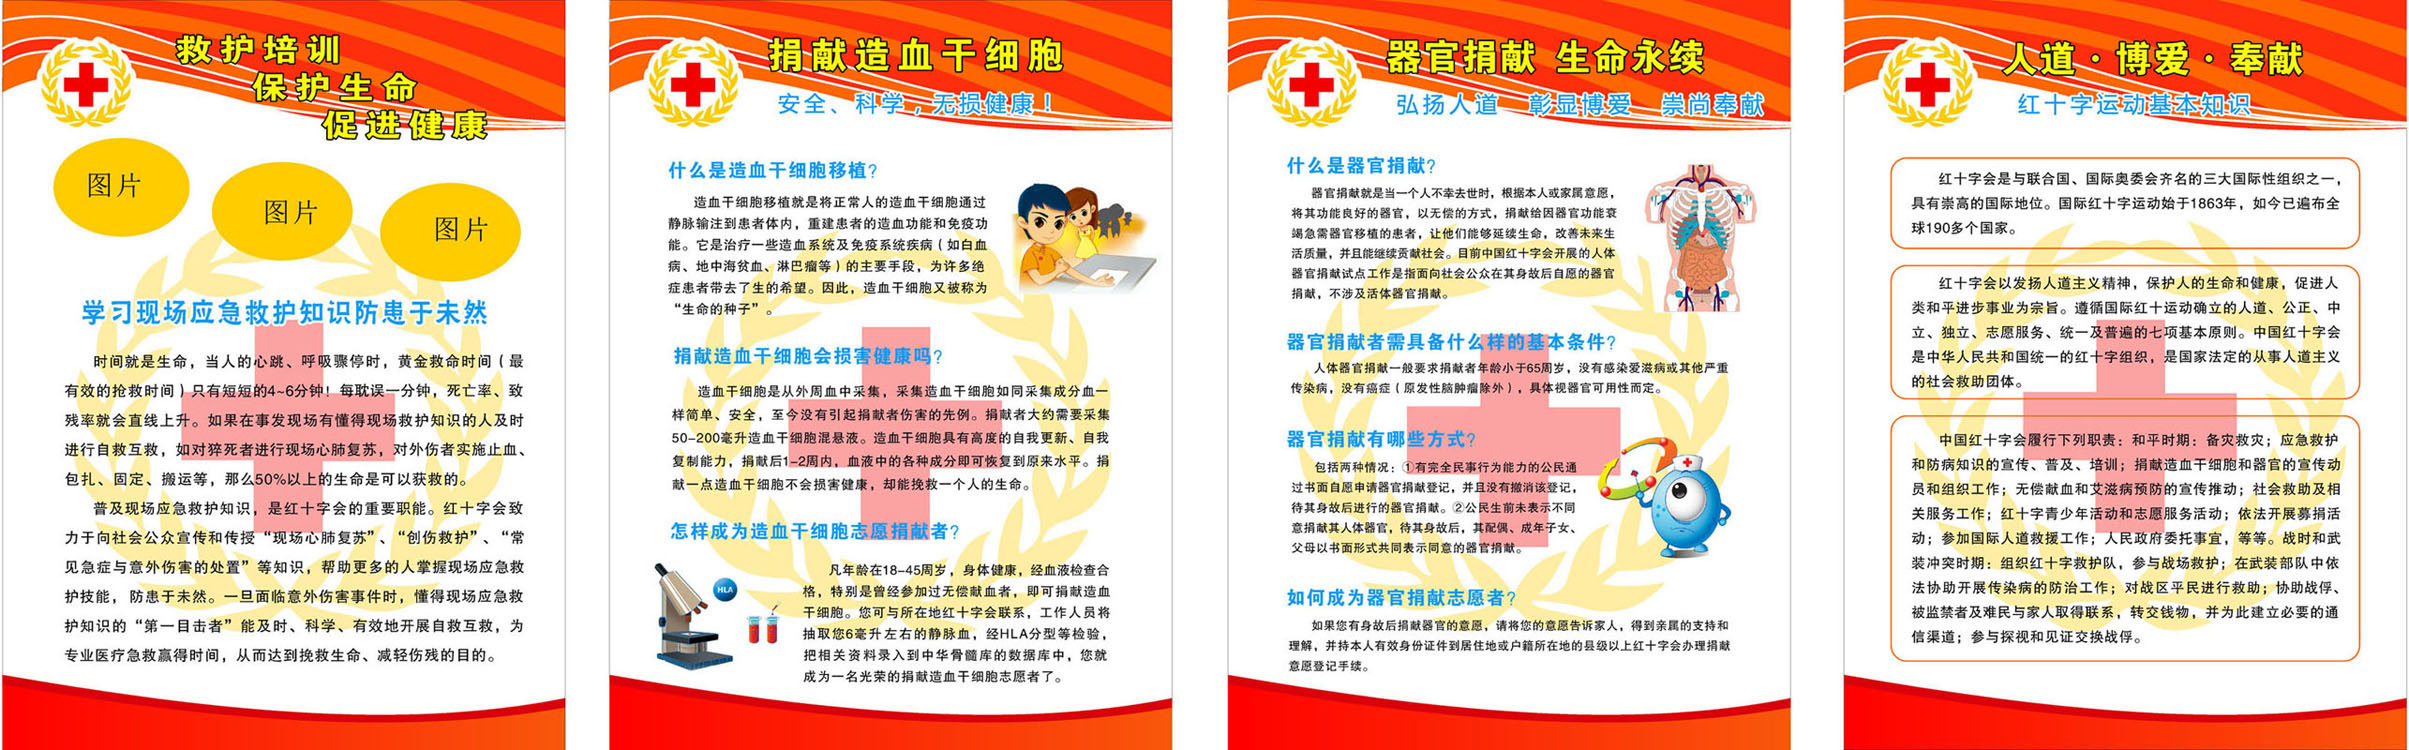 728海报印制展板写真喷绘贴纸844红十字会器官捐献宣传知识 (2)